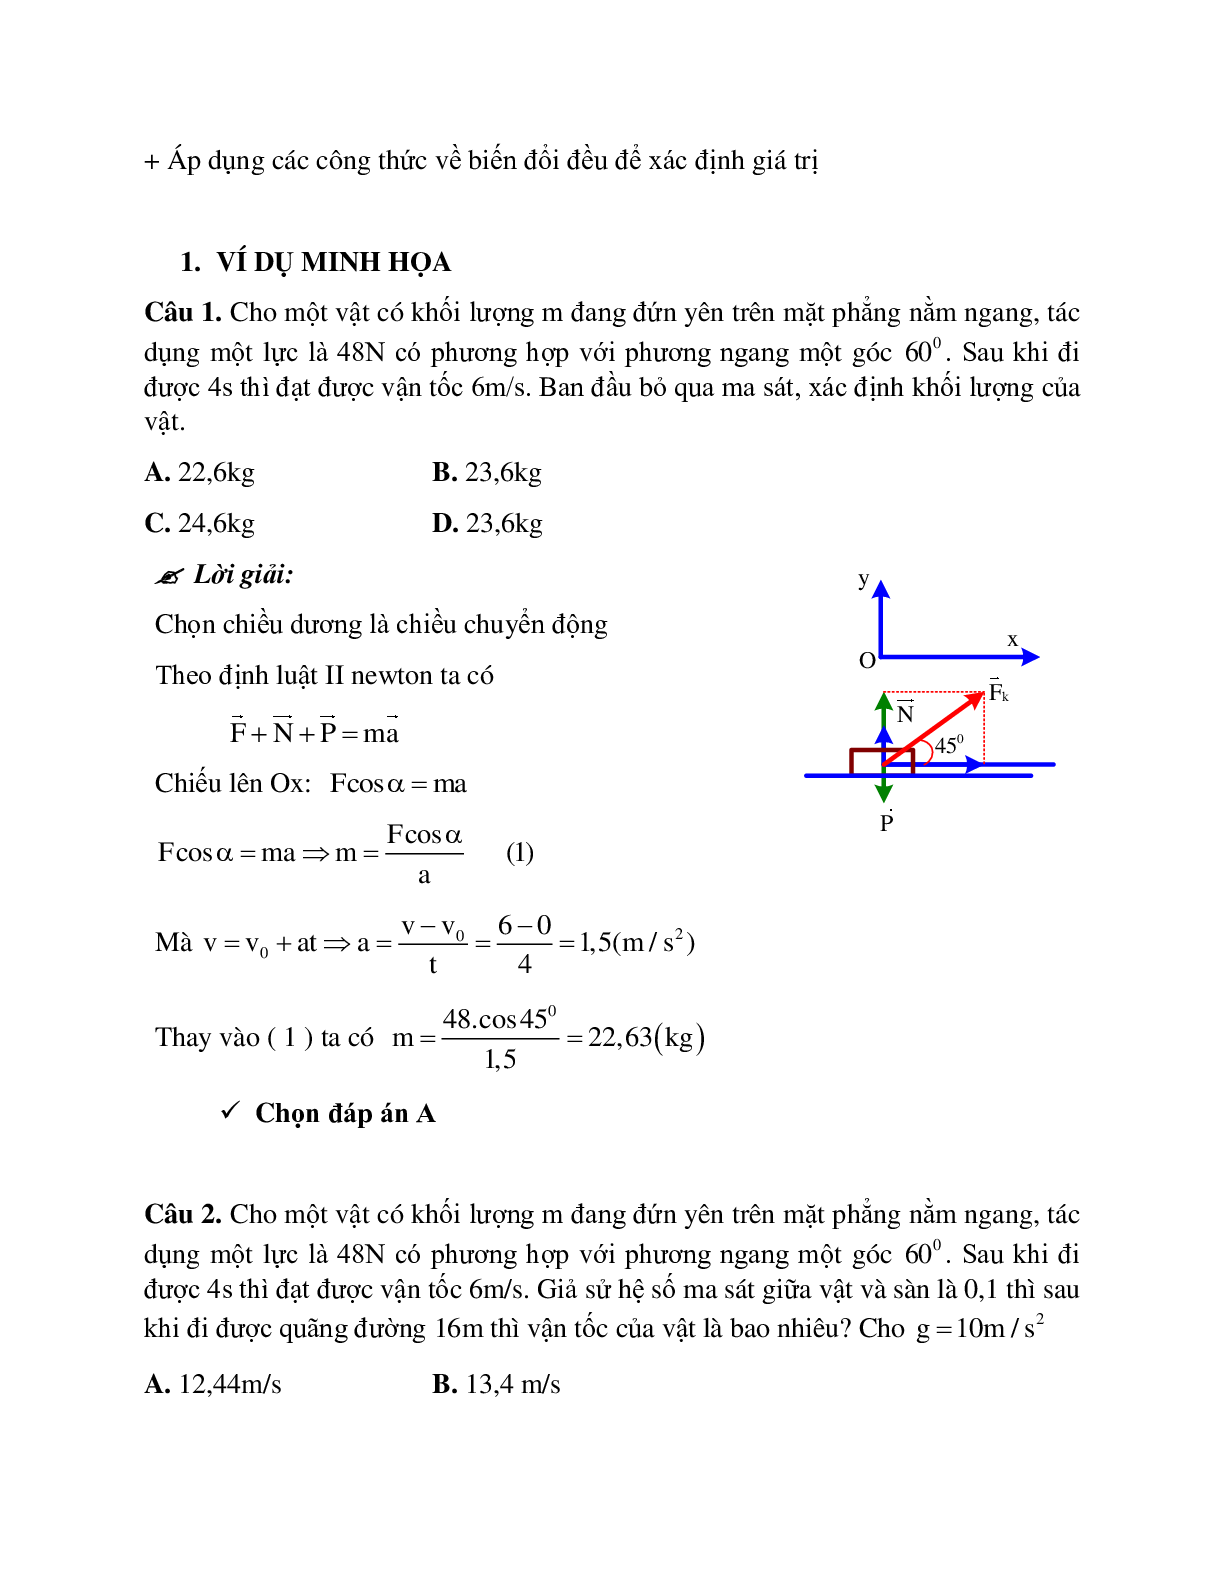 Bài tập về lực ma sát khi vật chuyển động theo phương ngang có đáp án (trang 2)